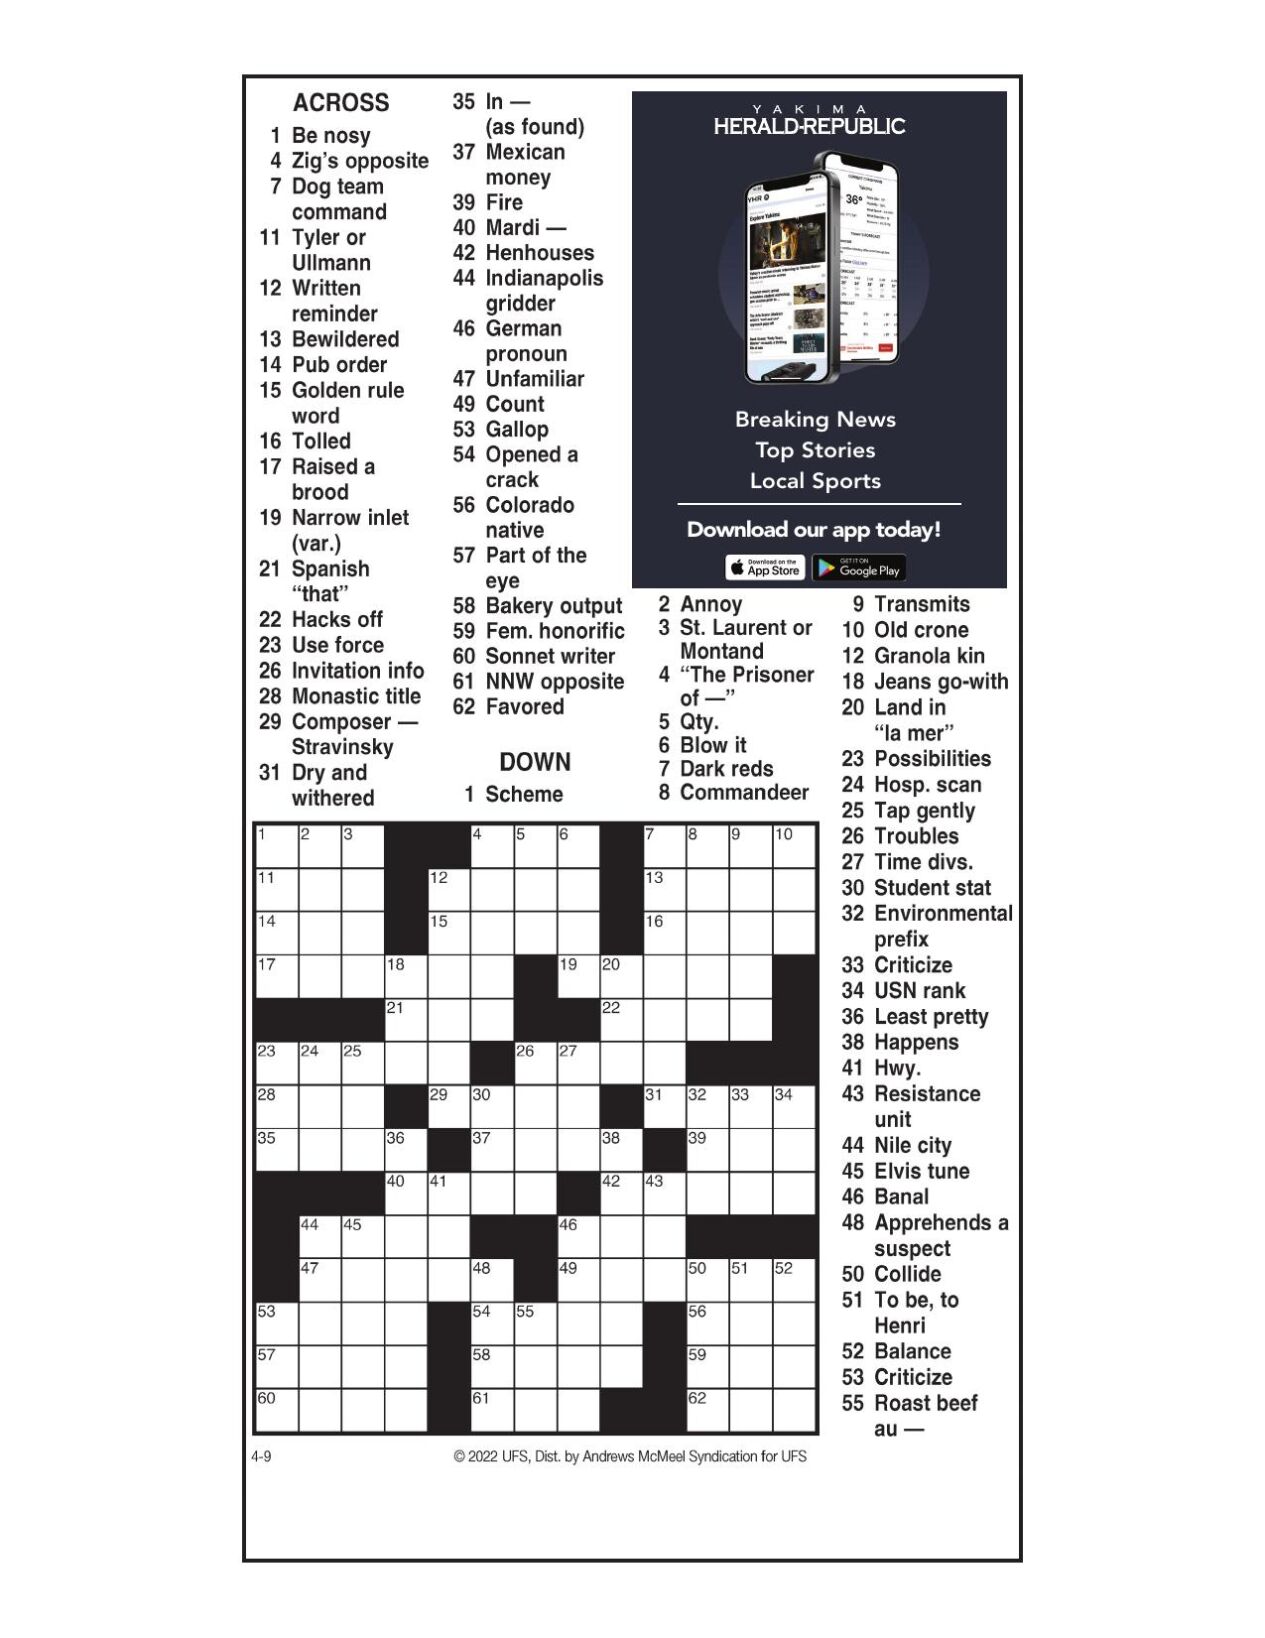 Andrews McMeel Crossword: April 9 2022 Crosswords yakimaherald com